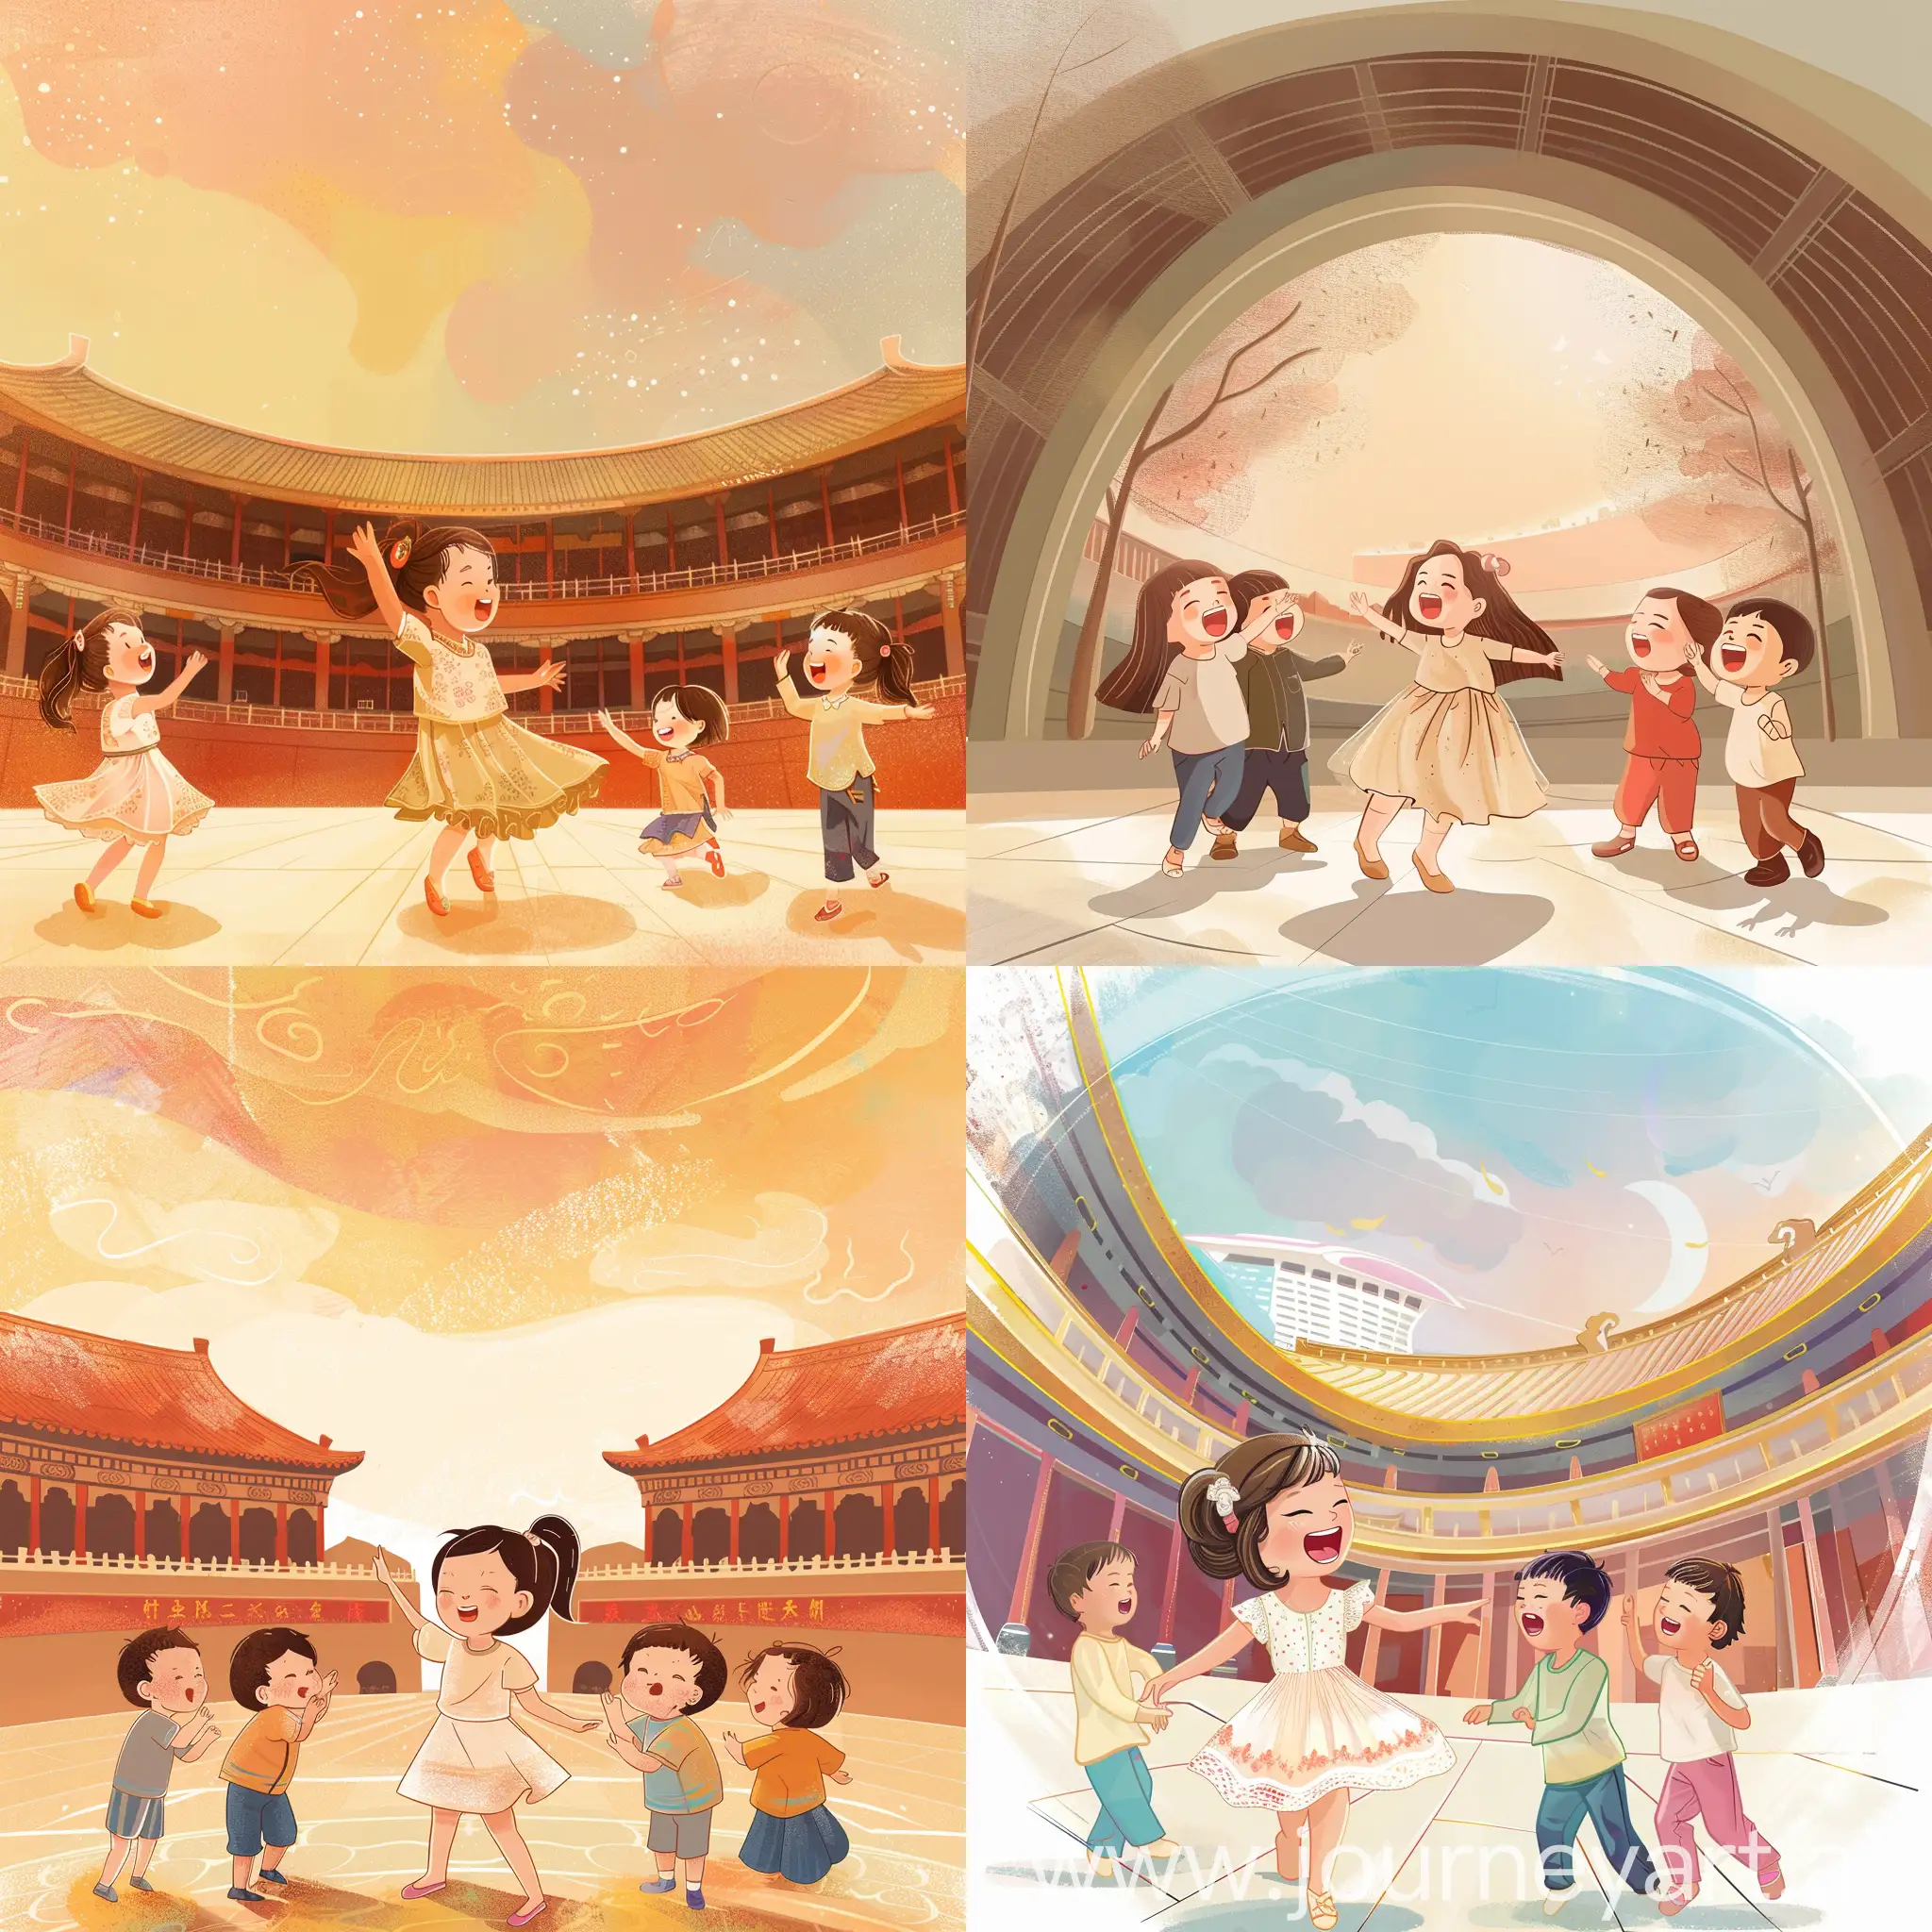 1个小女孩翩翩起舞，3个小朋友放声歌唱，背景是中国国家大剧院的半圆形建筑体，屏幕插画风